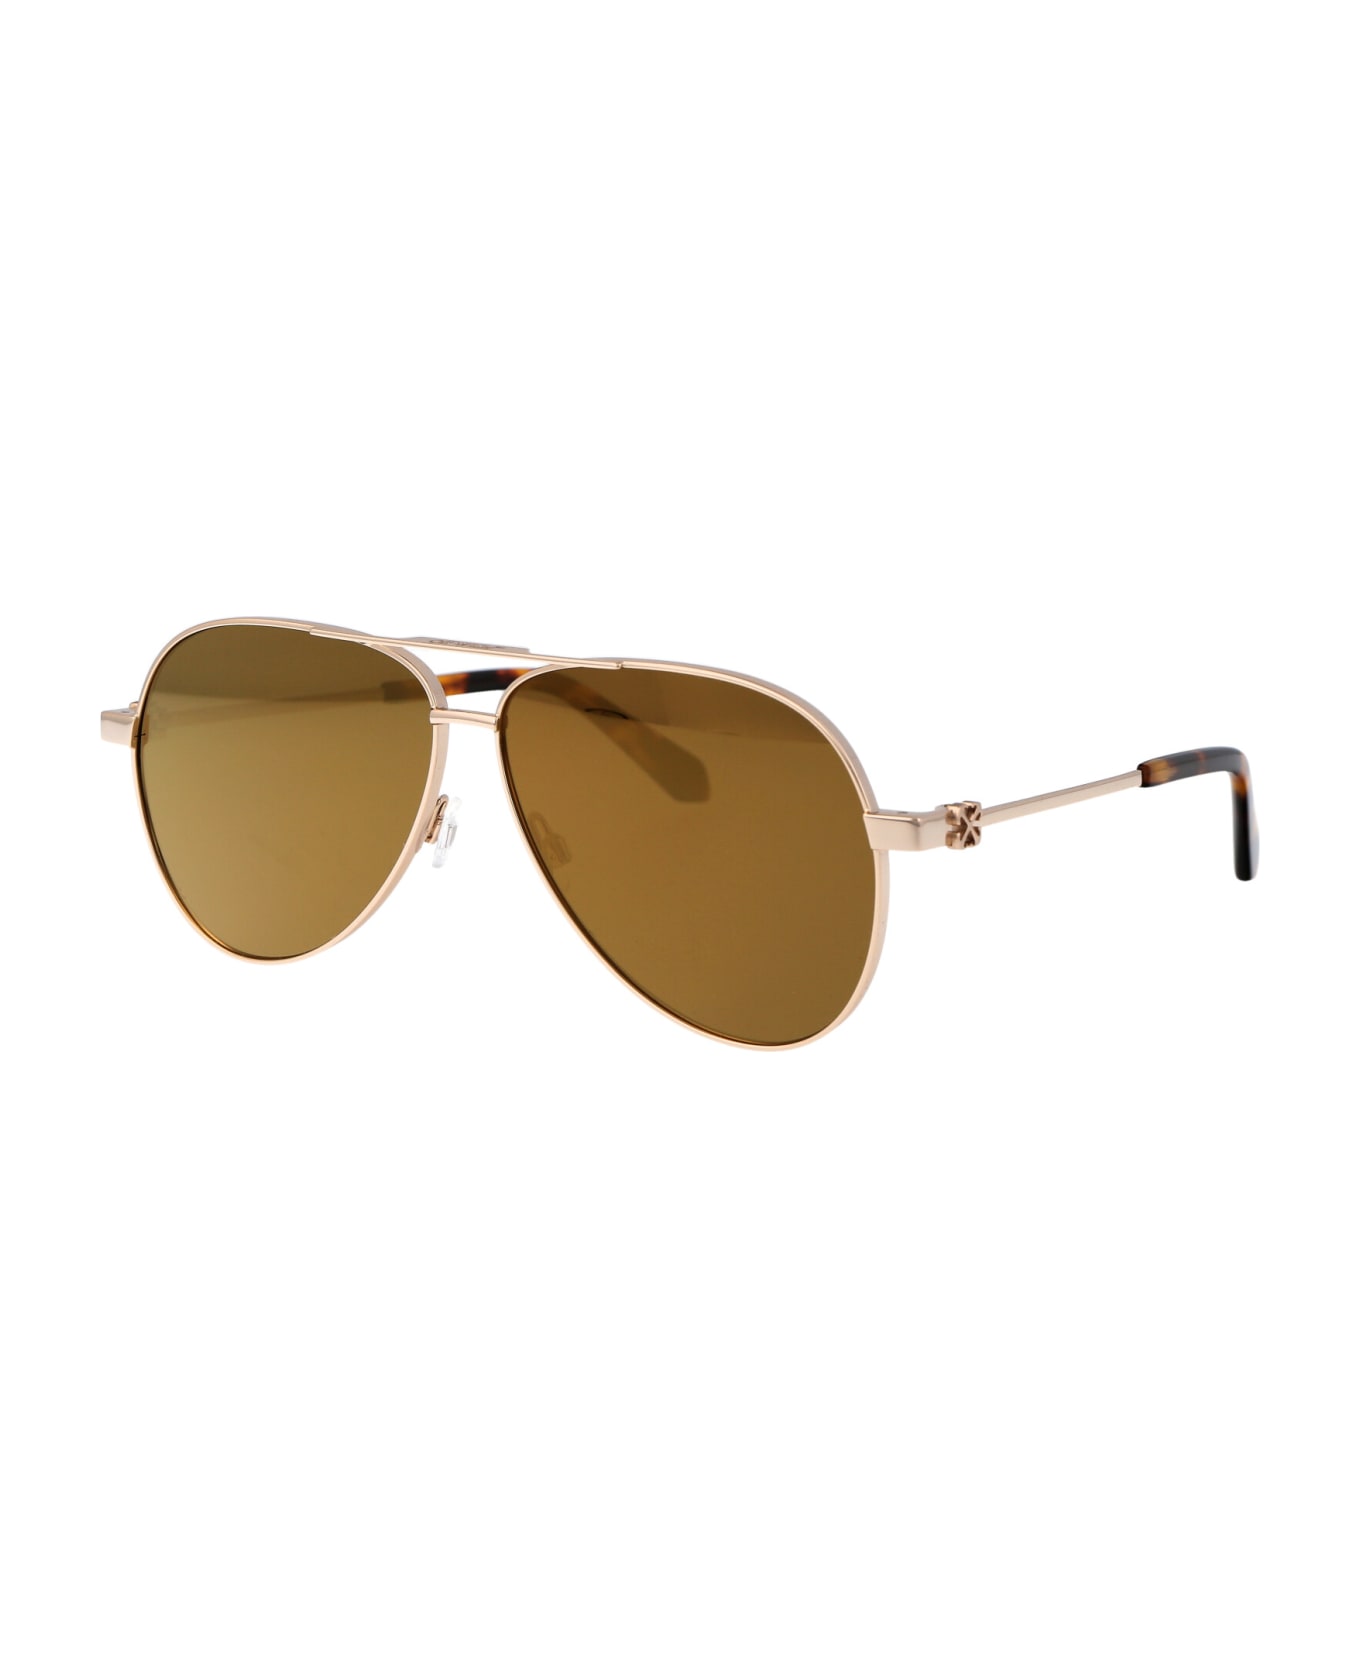 Off-White Ruston L Sunglasses - 7676 GOLD GOLD 